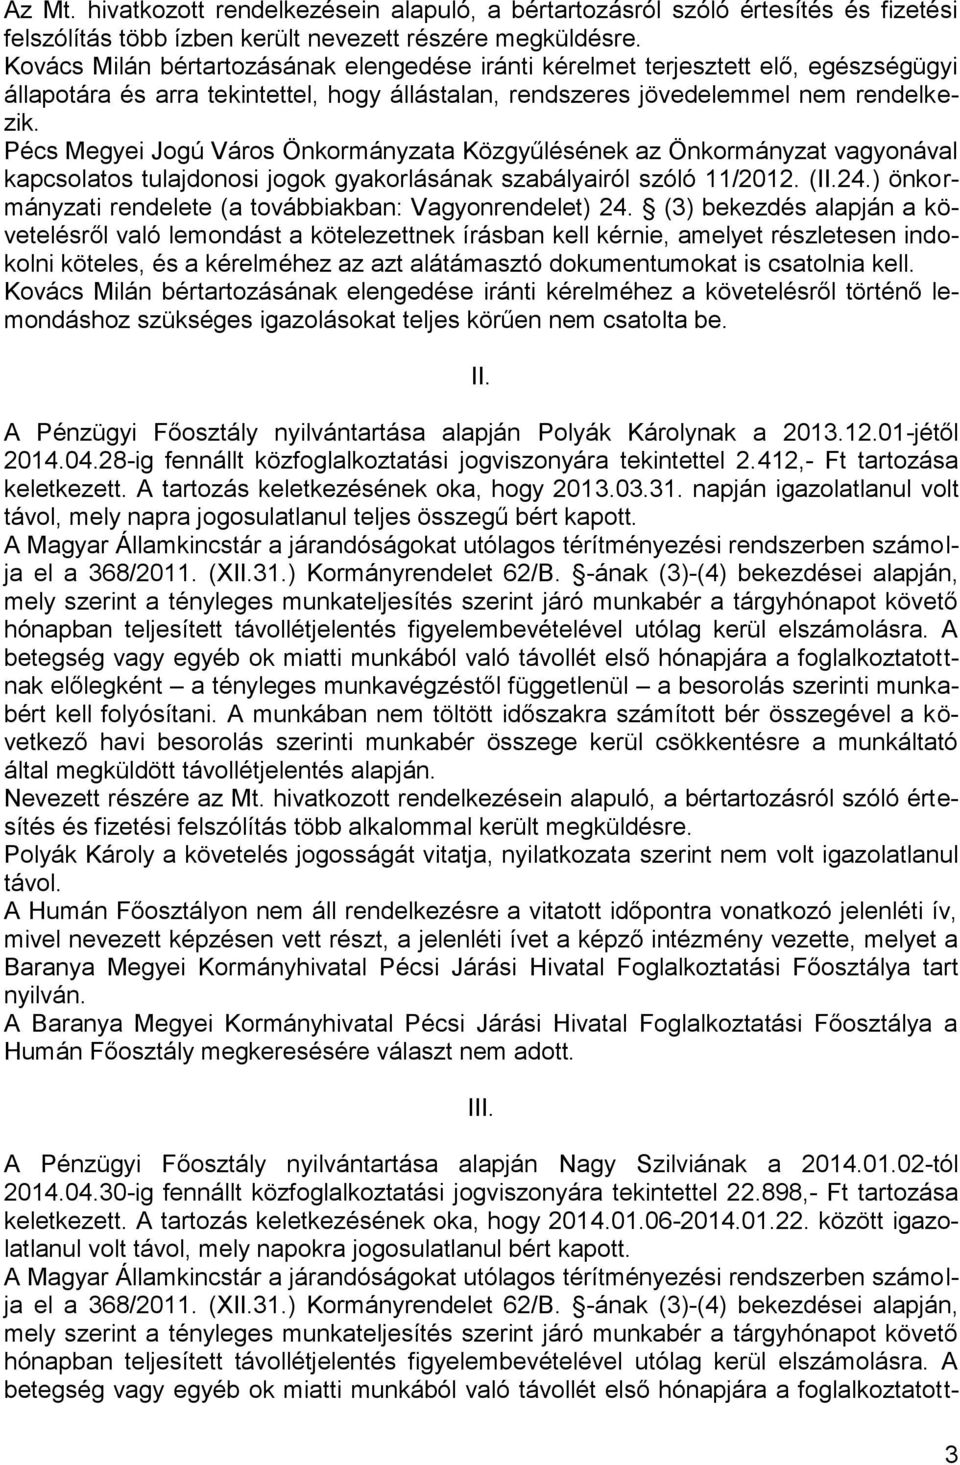 Pécs Megyei Jogú Város Önkormányzata Közgyűlésének az Önkormányzat vagyonával kapcsolatos tulajdonosi jogok gyakorlásának szabályairól szóló 11/2012. (II.24.